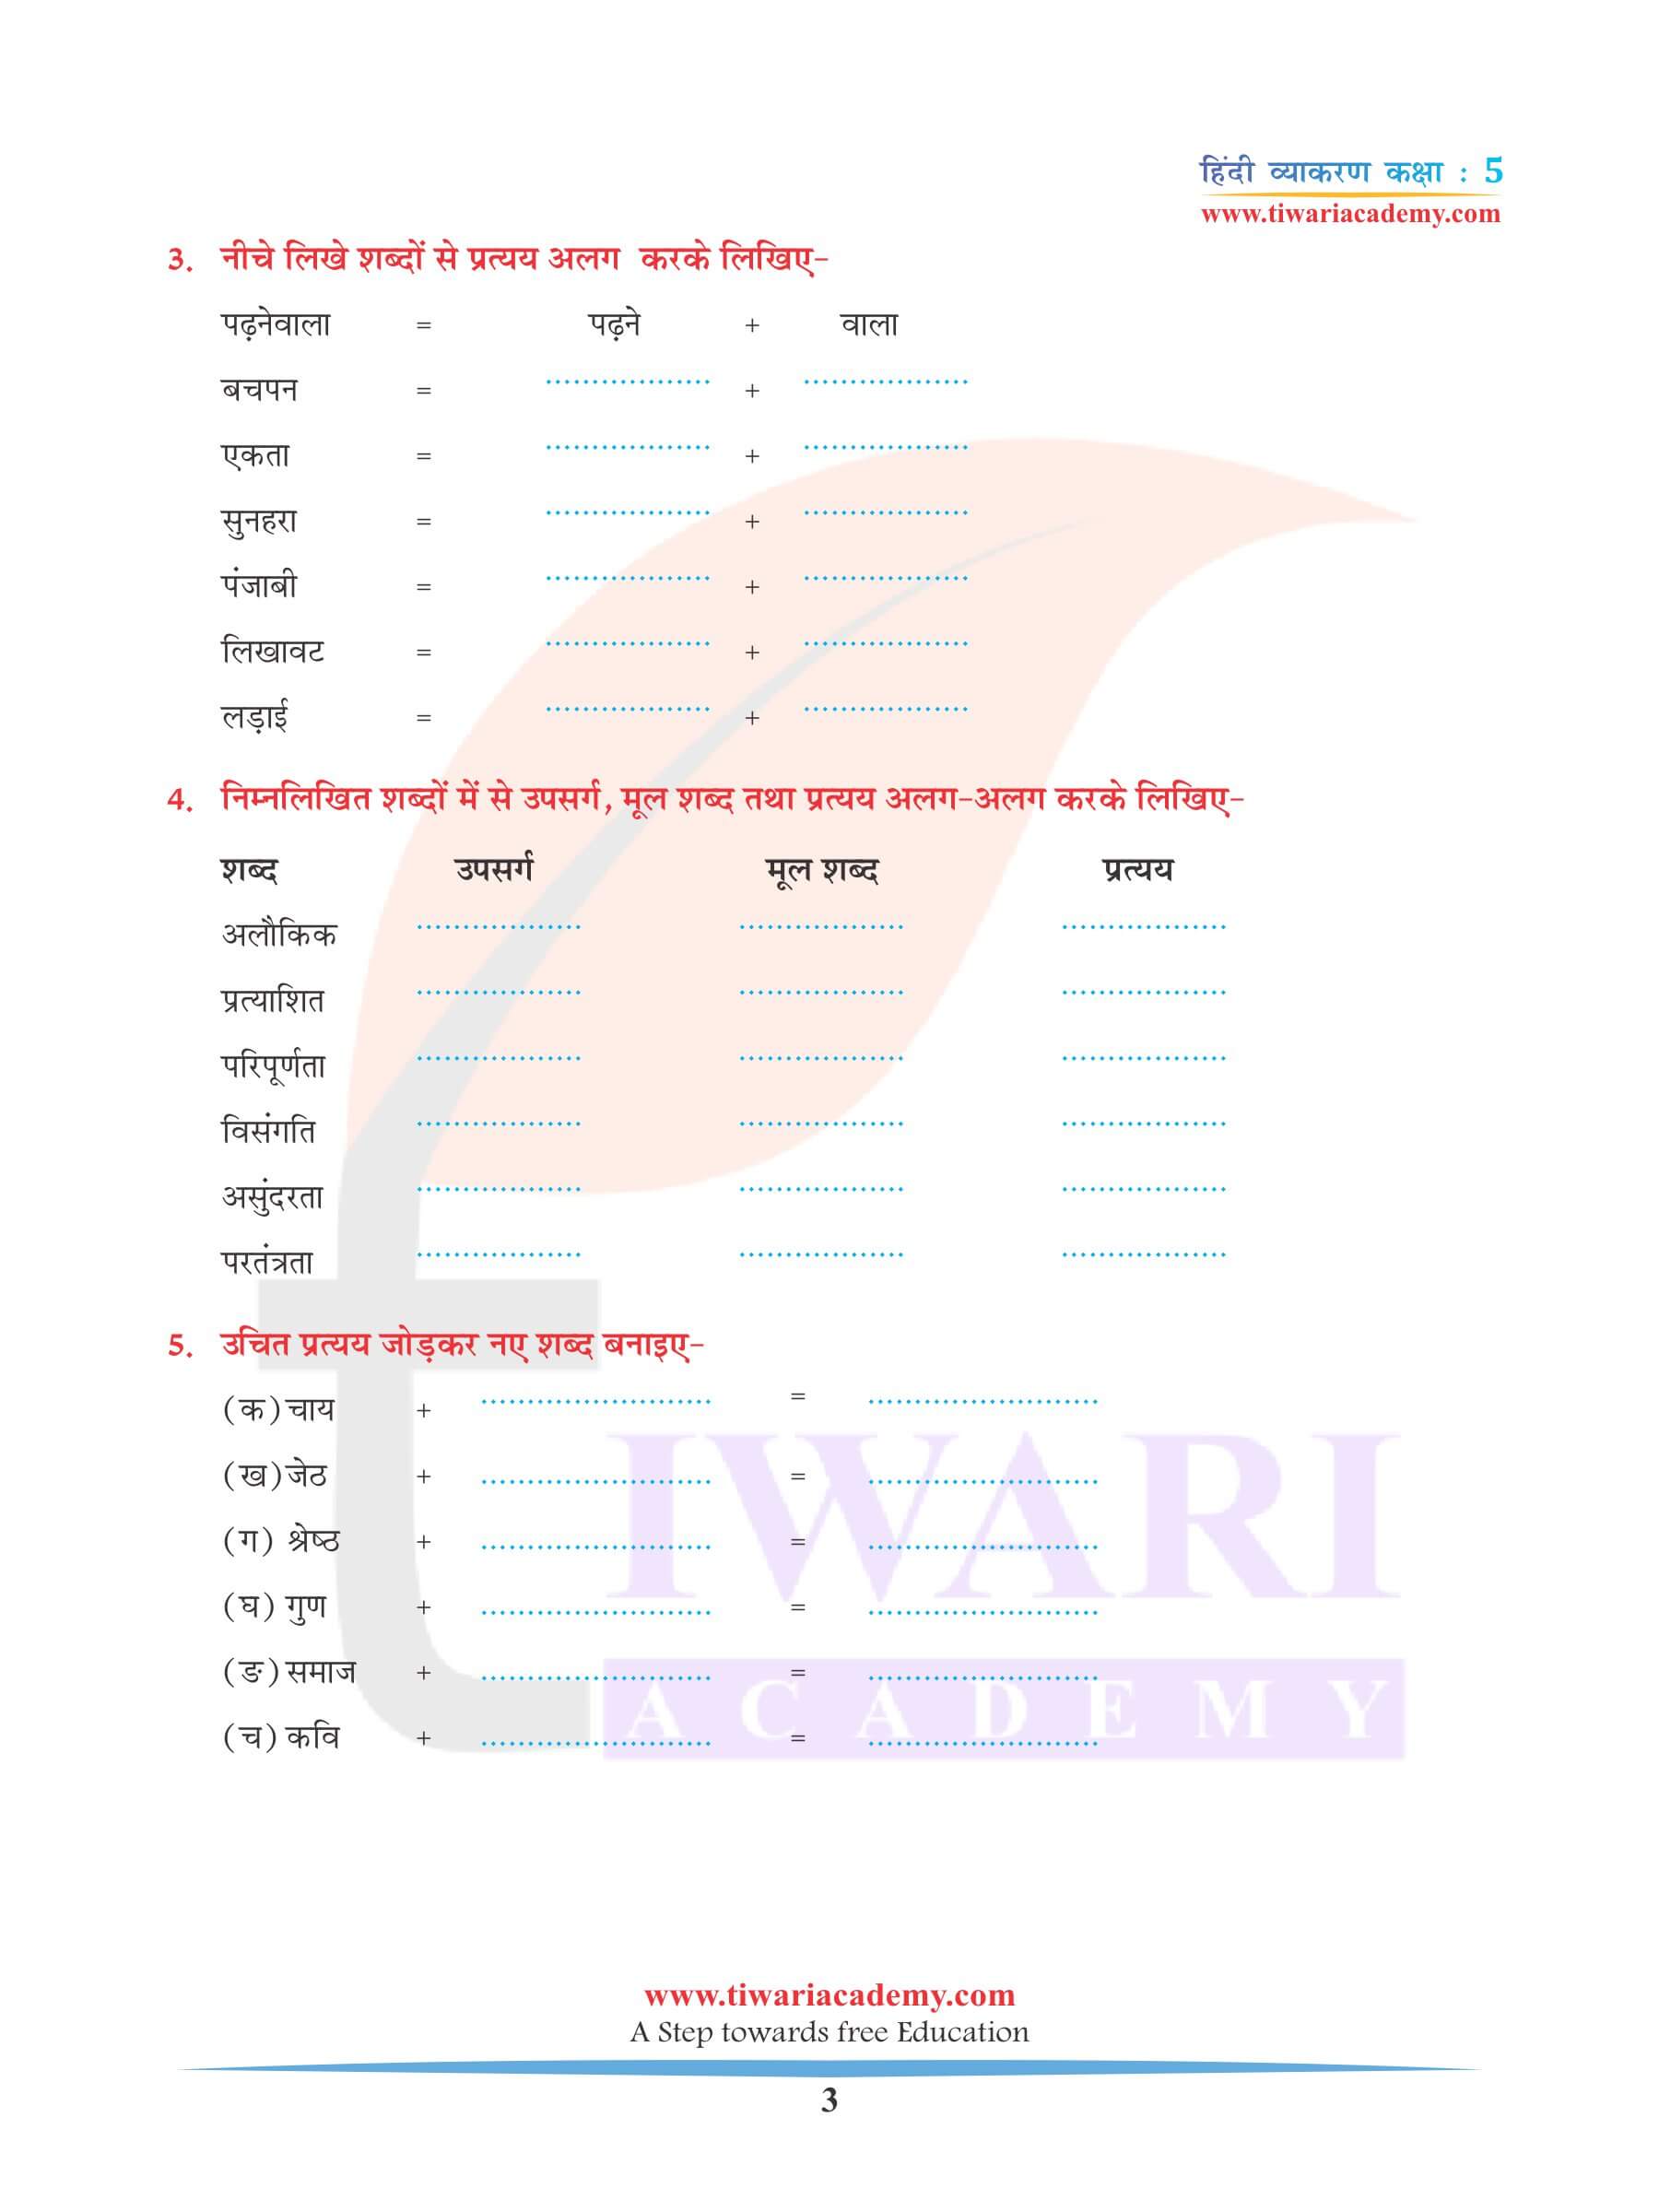 कक्षा 5 हिंदी व्याकरण अध्याय 12 शब्द निर्माण नोट्स